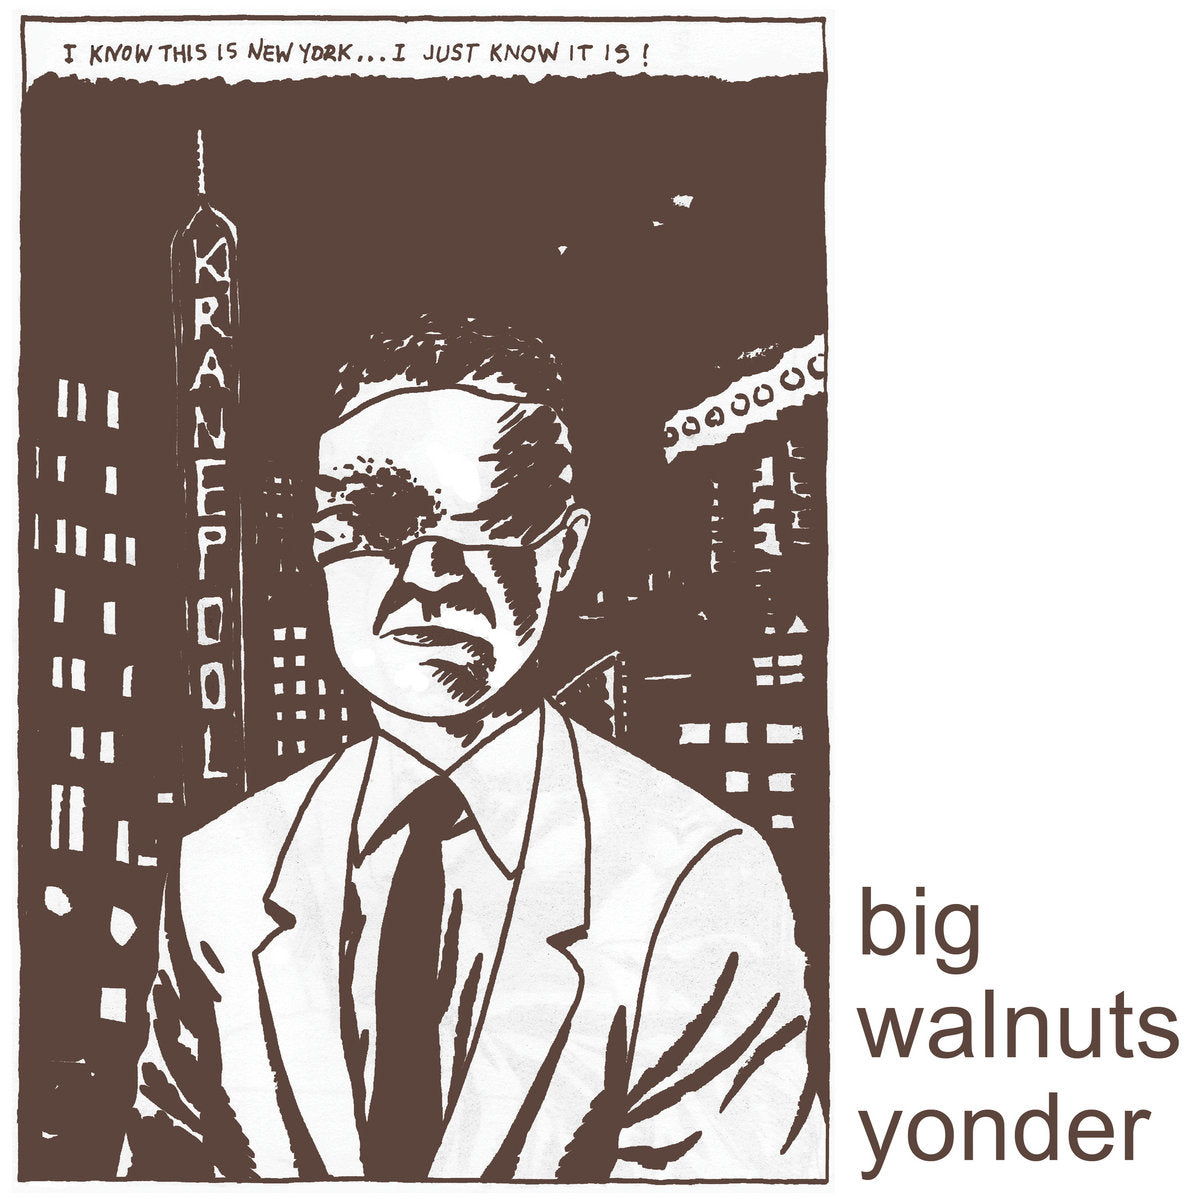 BIG WALNUTS YONDER "Big Walnuts Yonder" CD